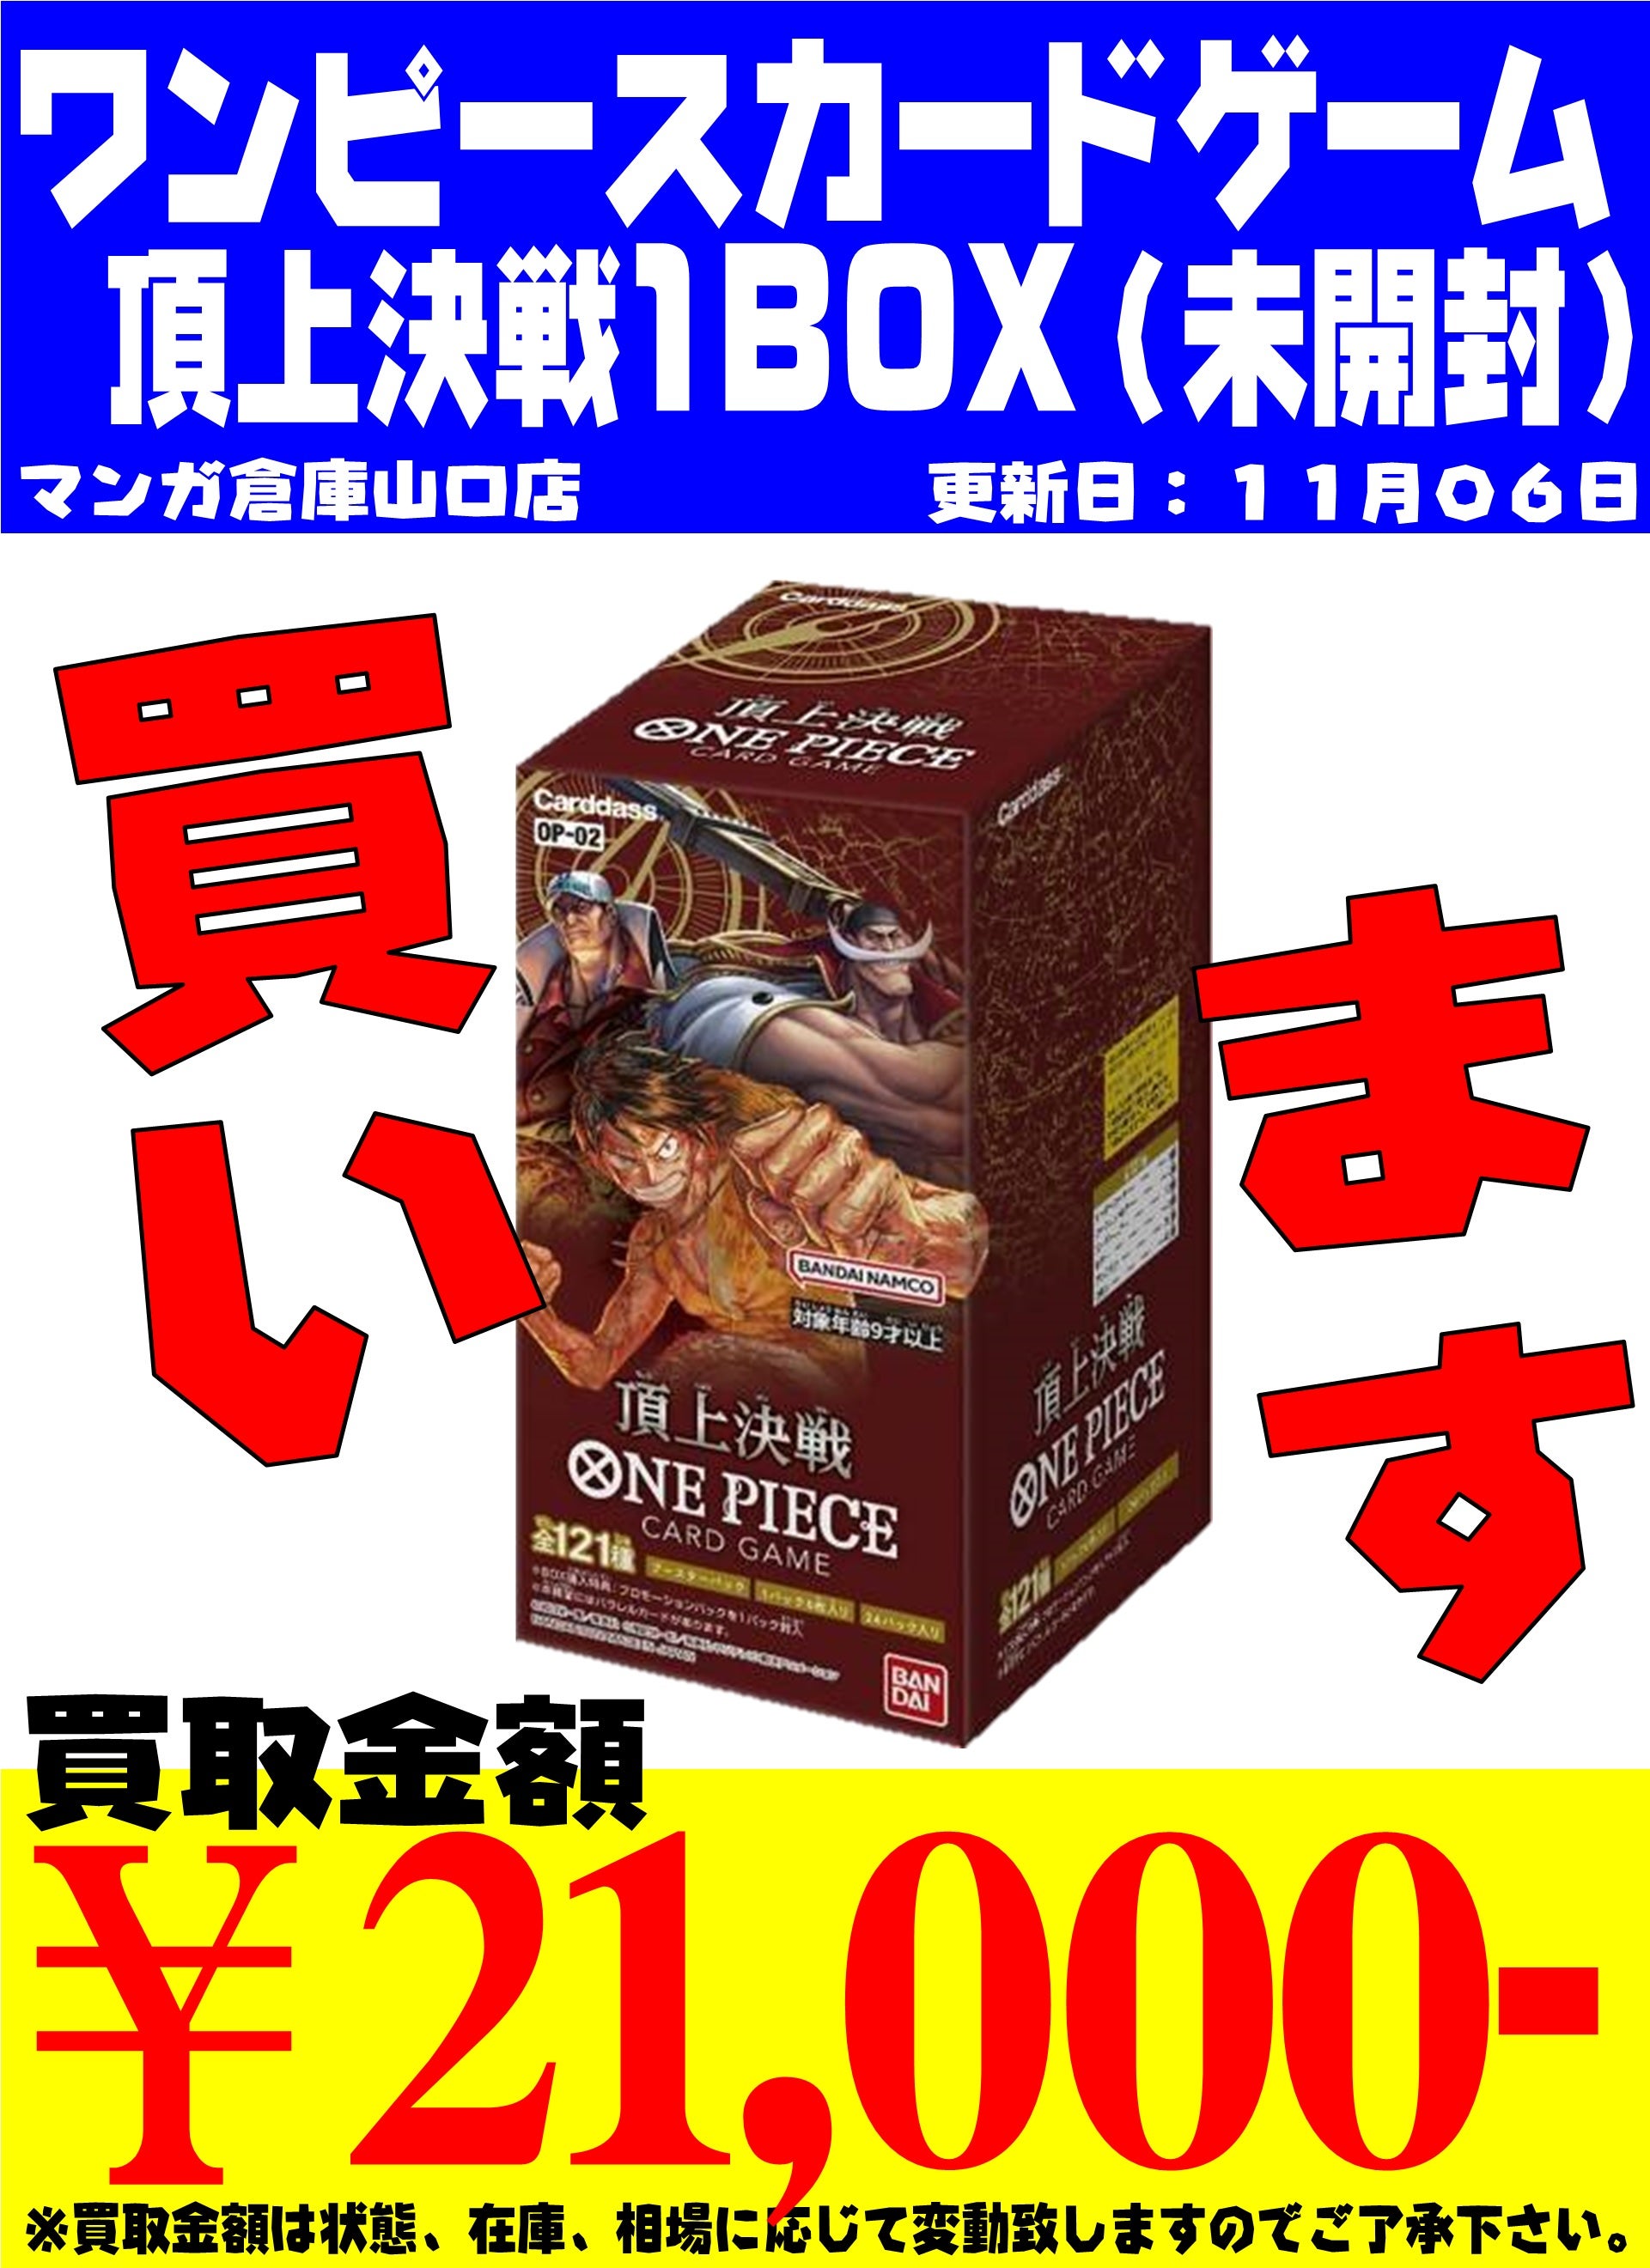 ワンピースカードゲーム 頂上決戦/未開封BOX/21000円買取 11/6現在の 